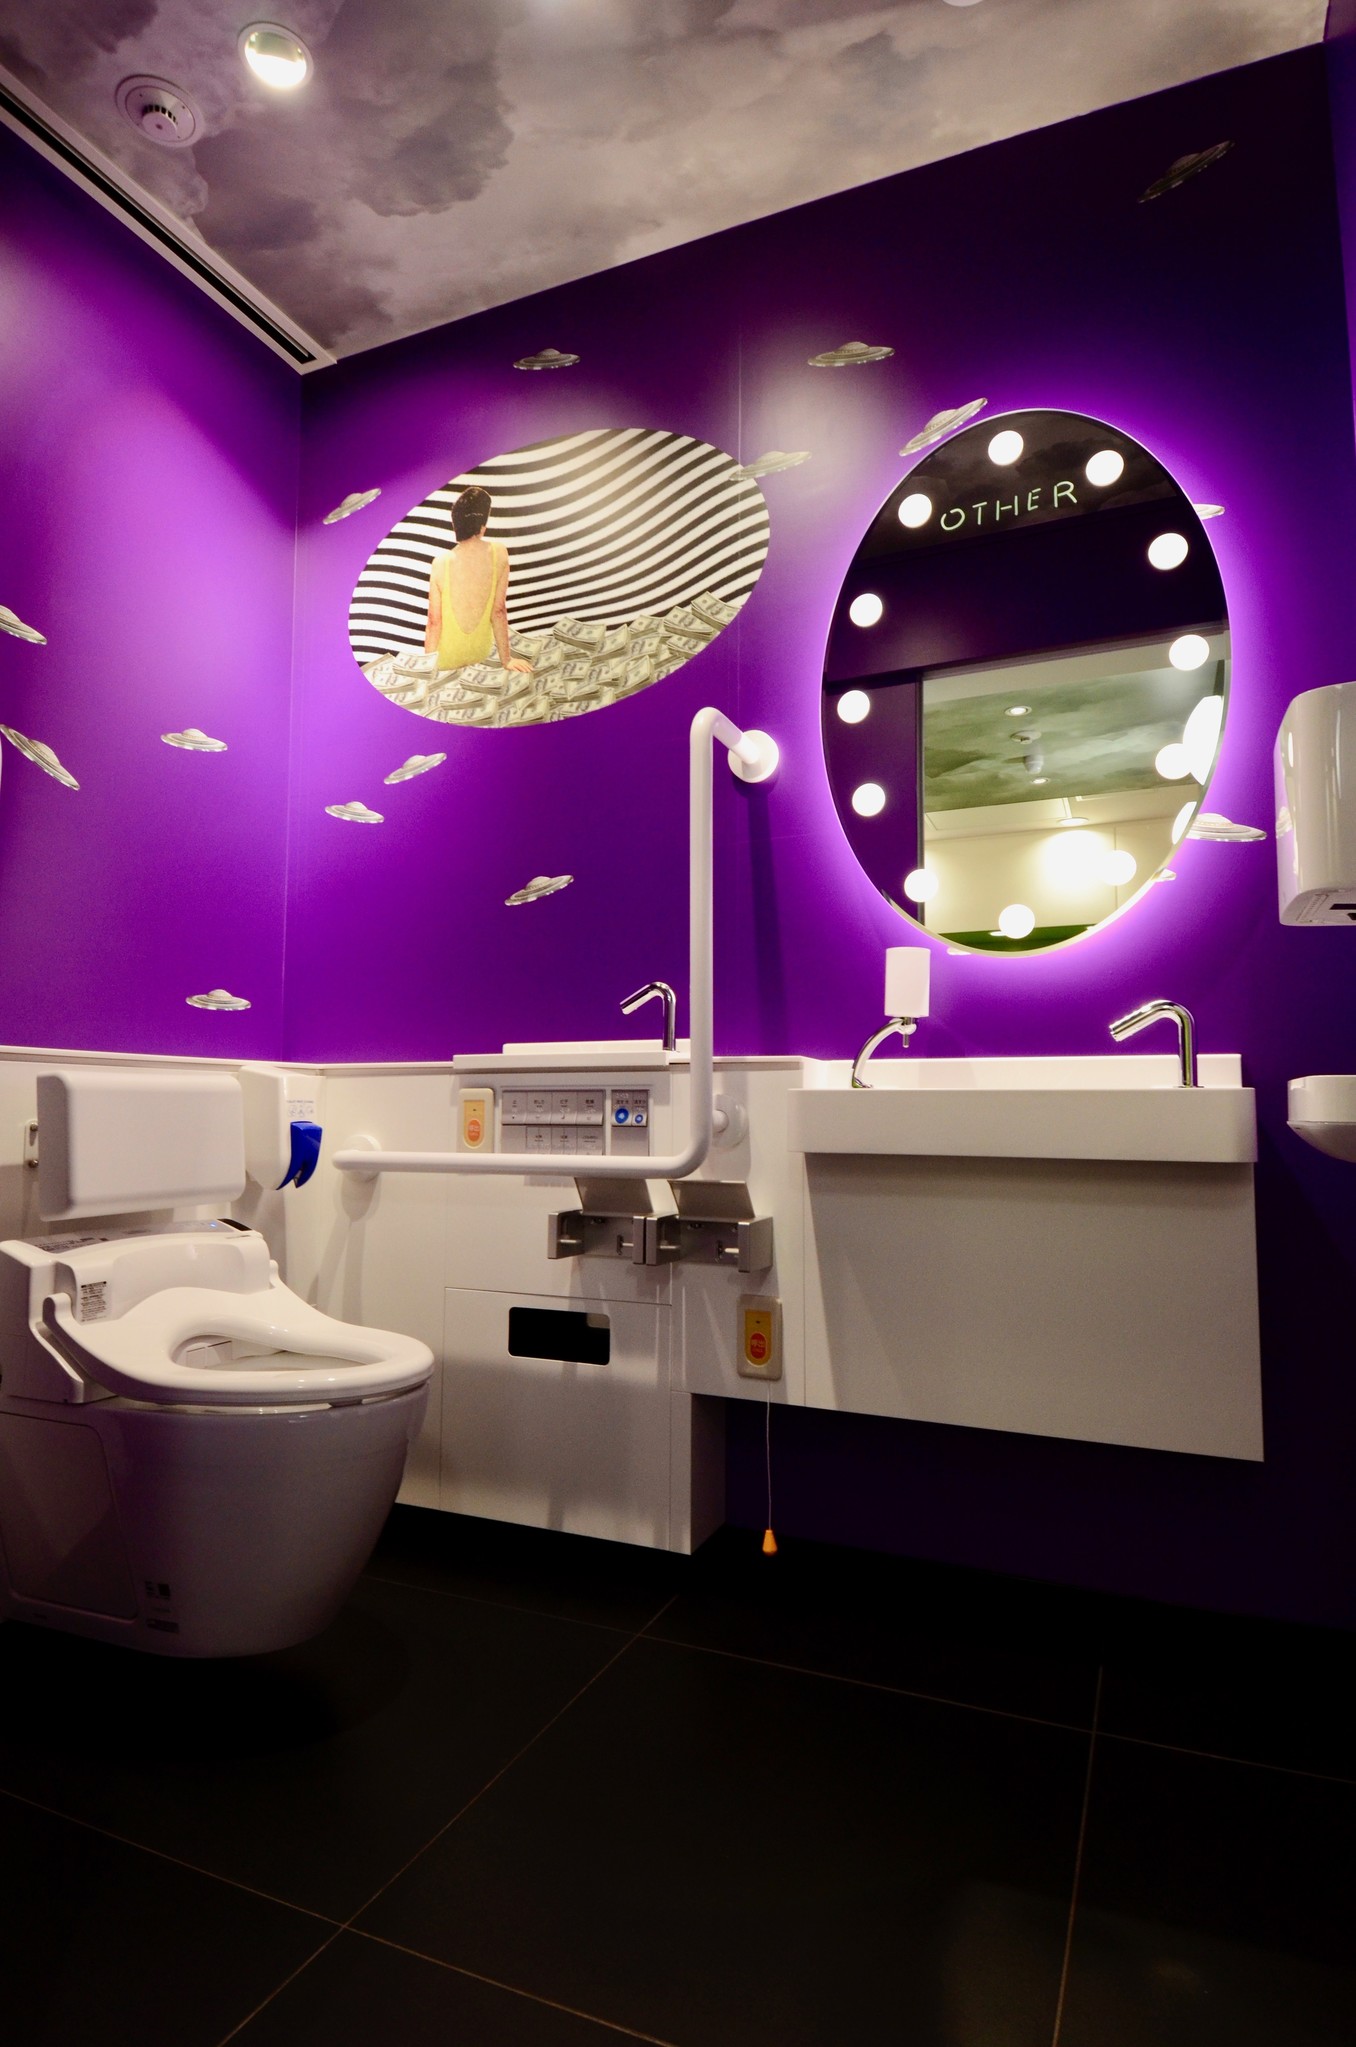 ラフォーレ原宿3階のトイレが3月23日(土)リニューアル　アーティスト“とんだ林蘭”デザインのトイレが登場　「原宿の奇妙な異空間」をコンセプトにしたガーリーで独創的なデザインで展開